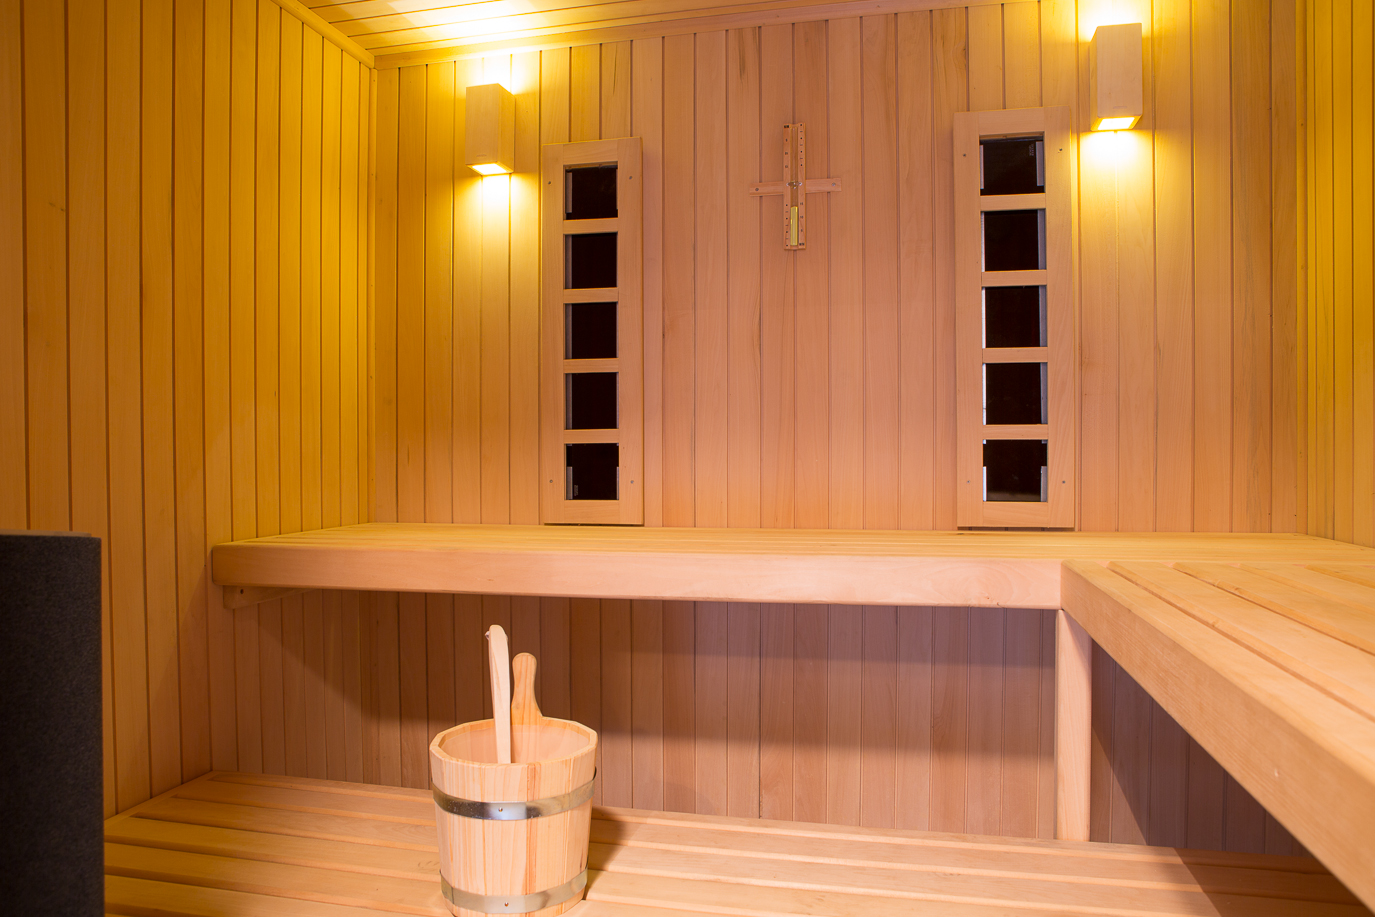 la maison de vacances dispose d'un sauna pour le plaisir des vacanciers